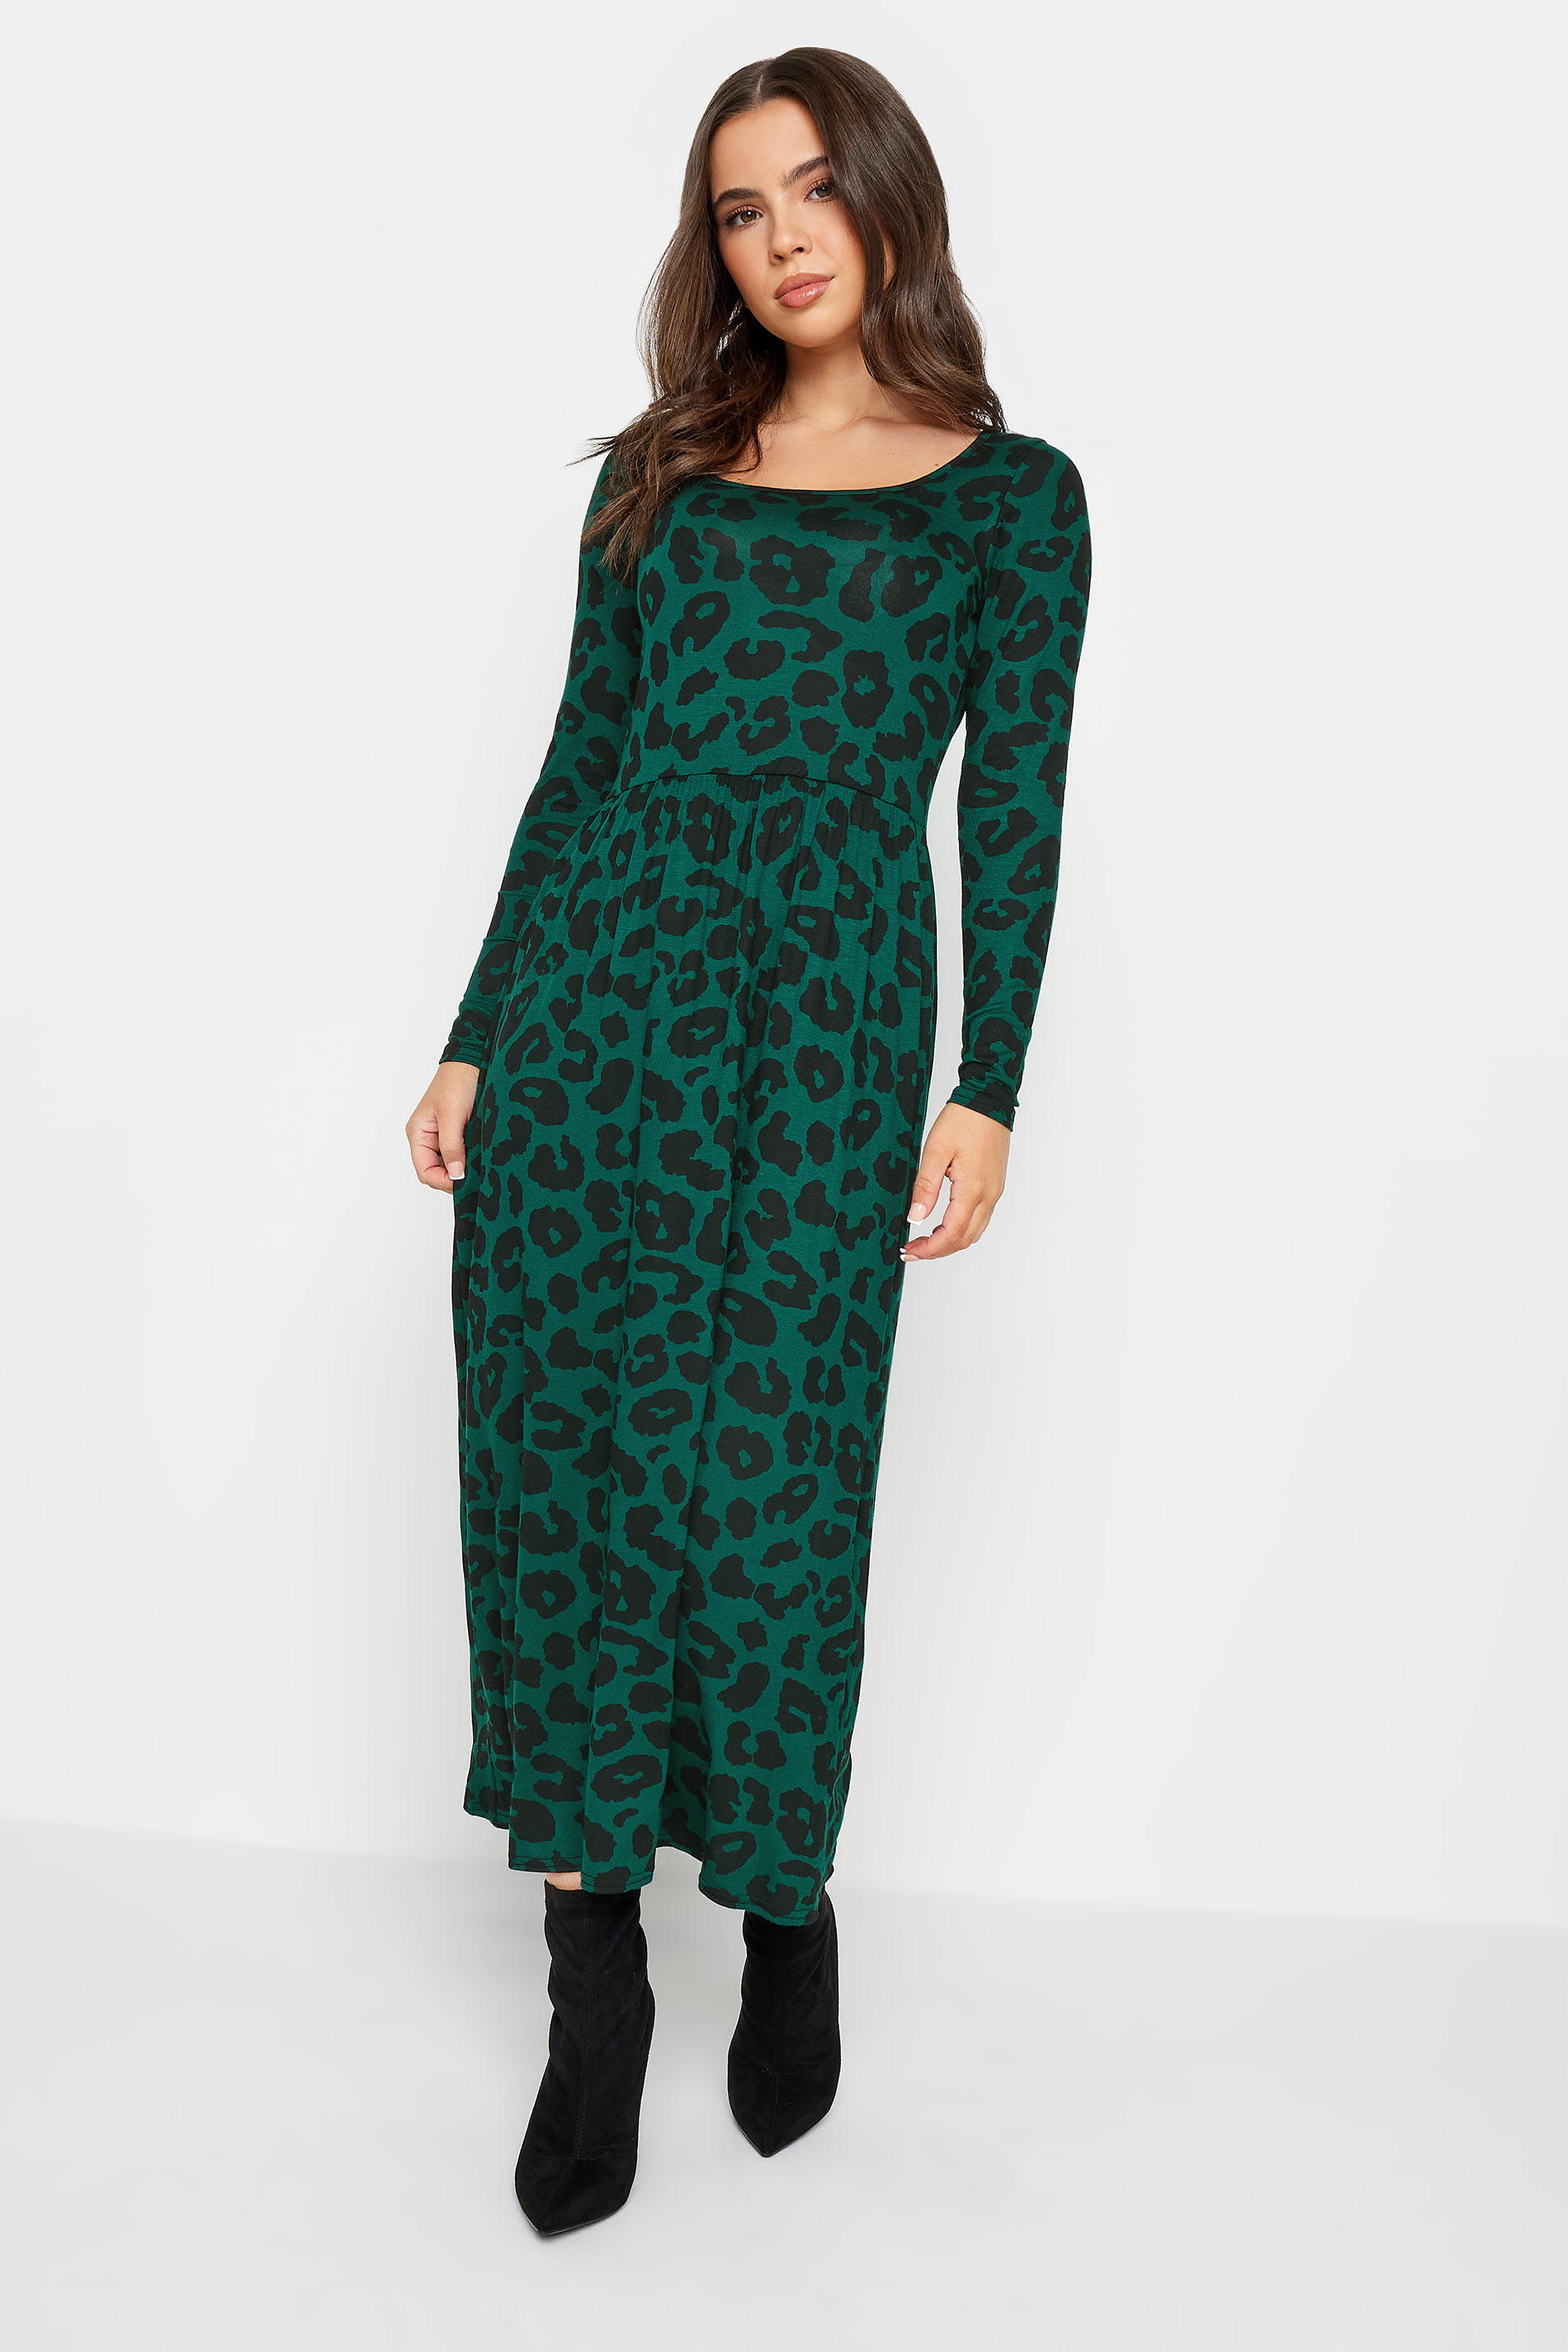 PixieGirl Petite Dark Green Leopard Print Long Sleeve Midi Dress | PixieGirl  1